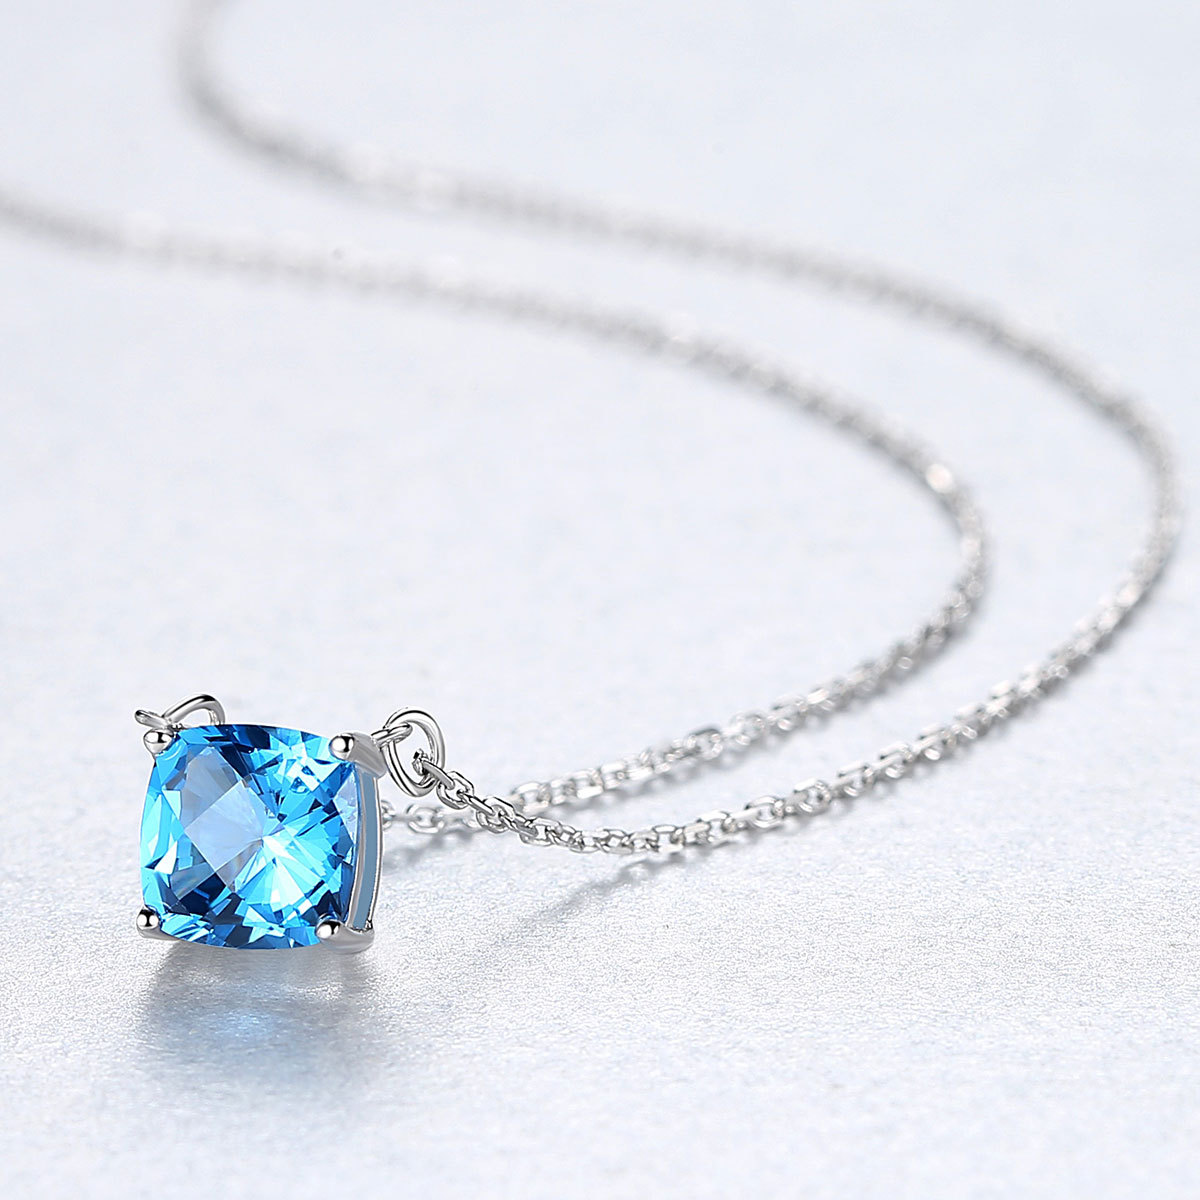 Nuovo sapphire sintetico di lusso s925 collana a ciondolo argento donne gioielli retr￲ in stile retr￲ lucido geometrico gemme collana con catena regalo